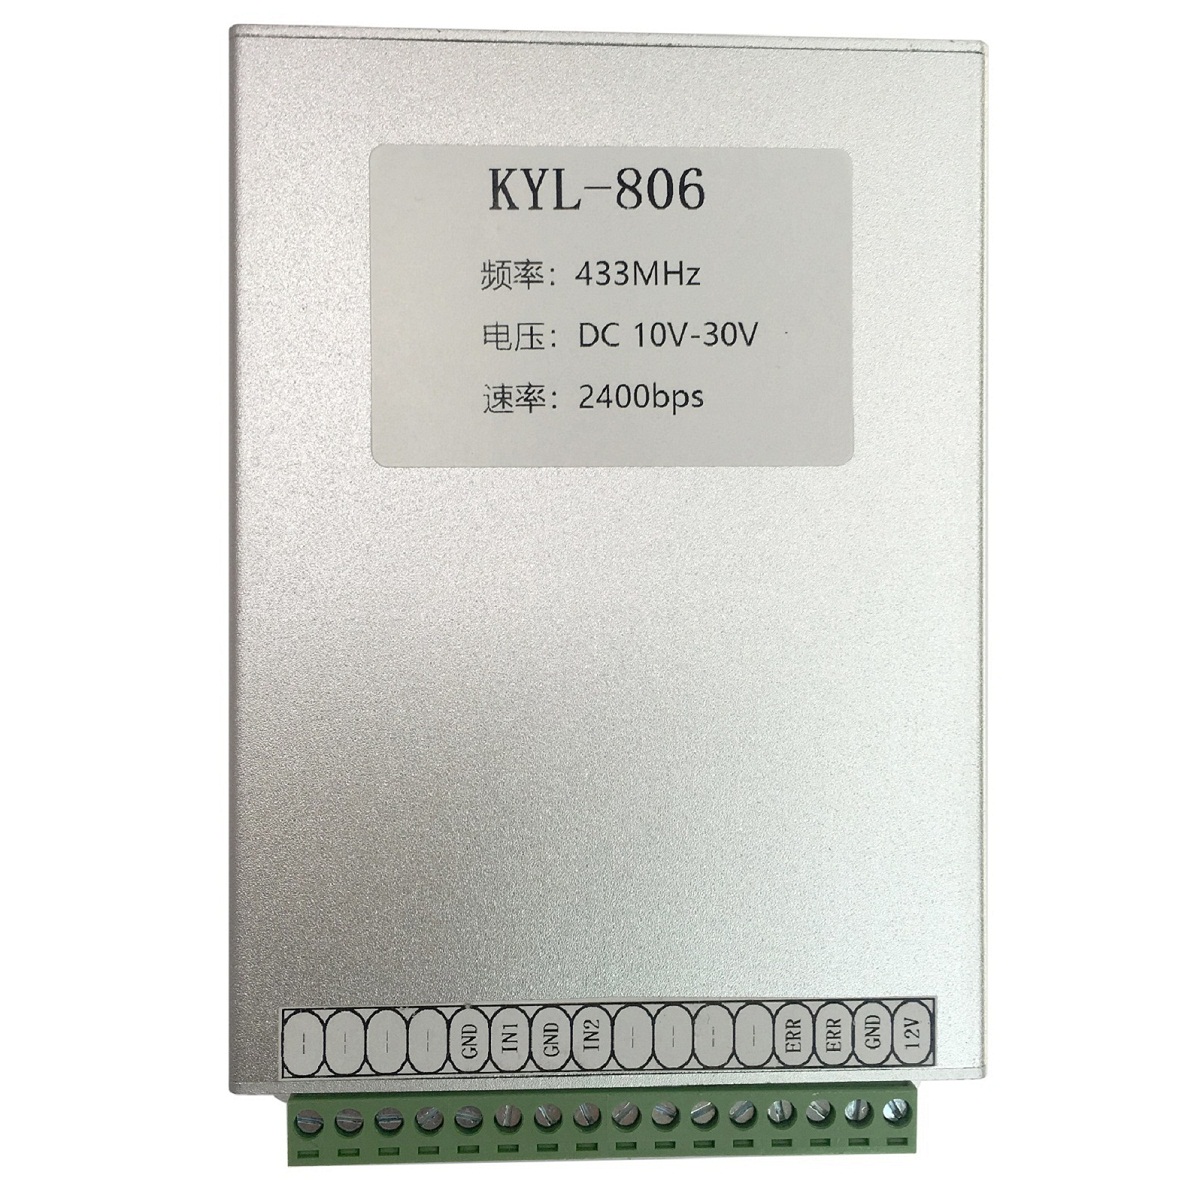 KYL-806 